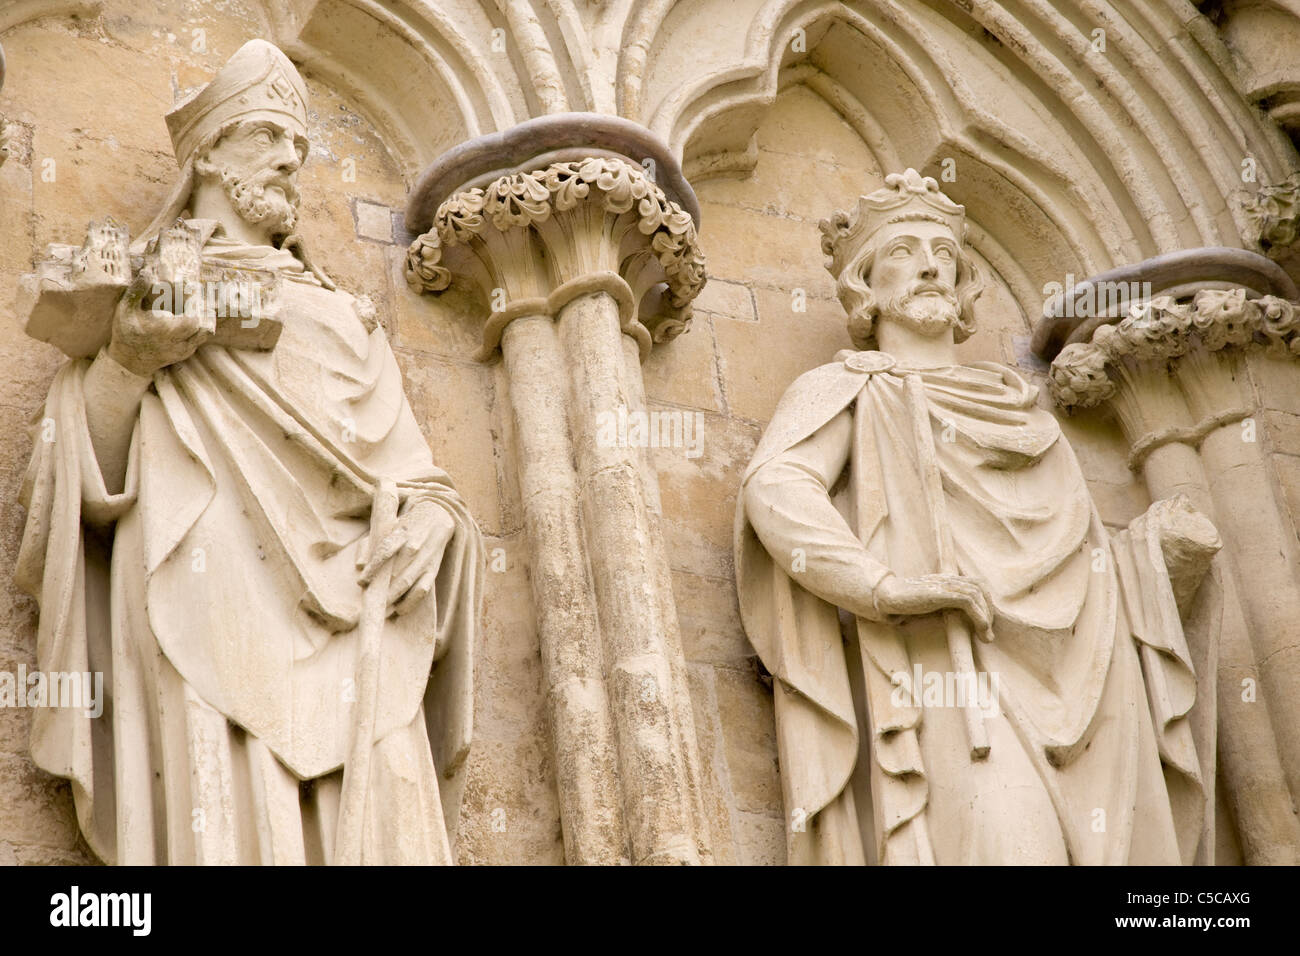 Statue sur la cathédrale de Salisbury, Wiltshire, Angleterre Banque D'Images